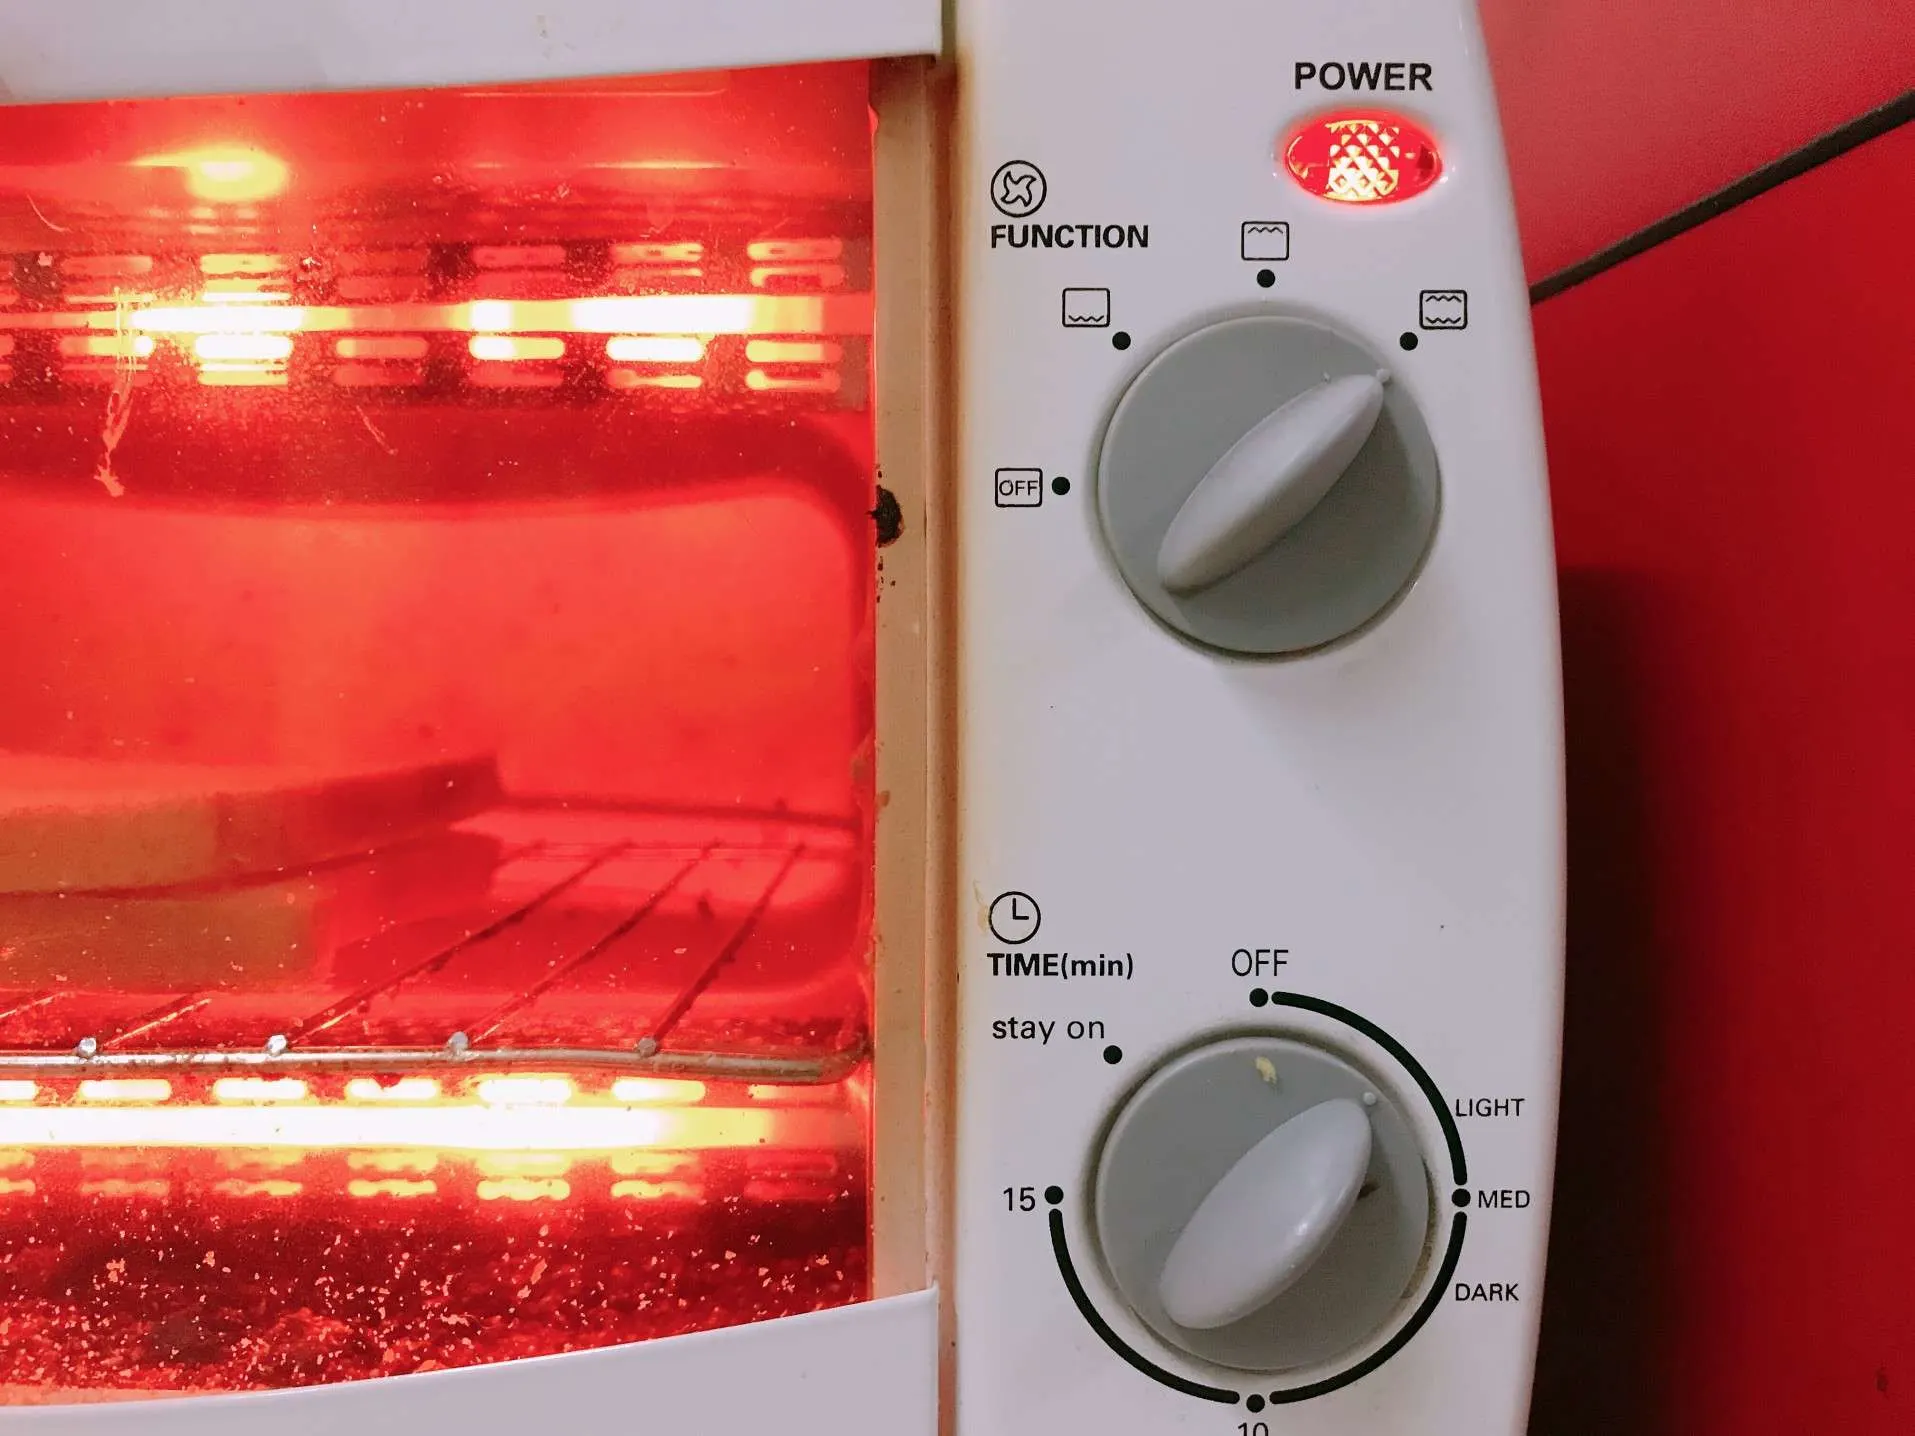 Toast oven turned on